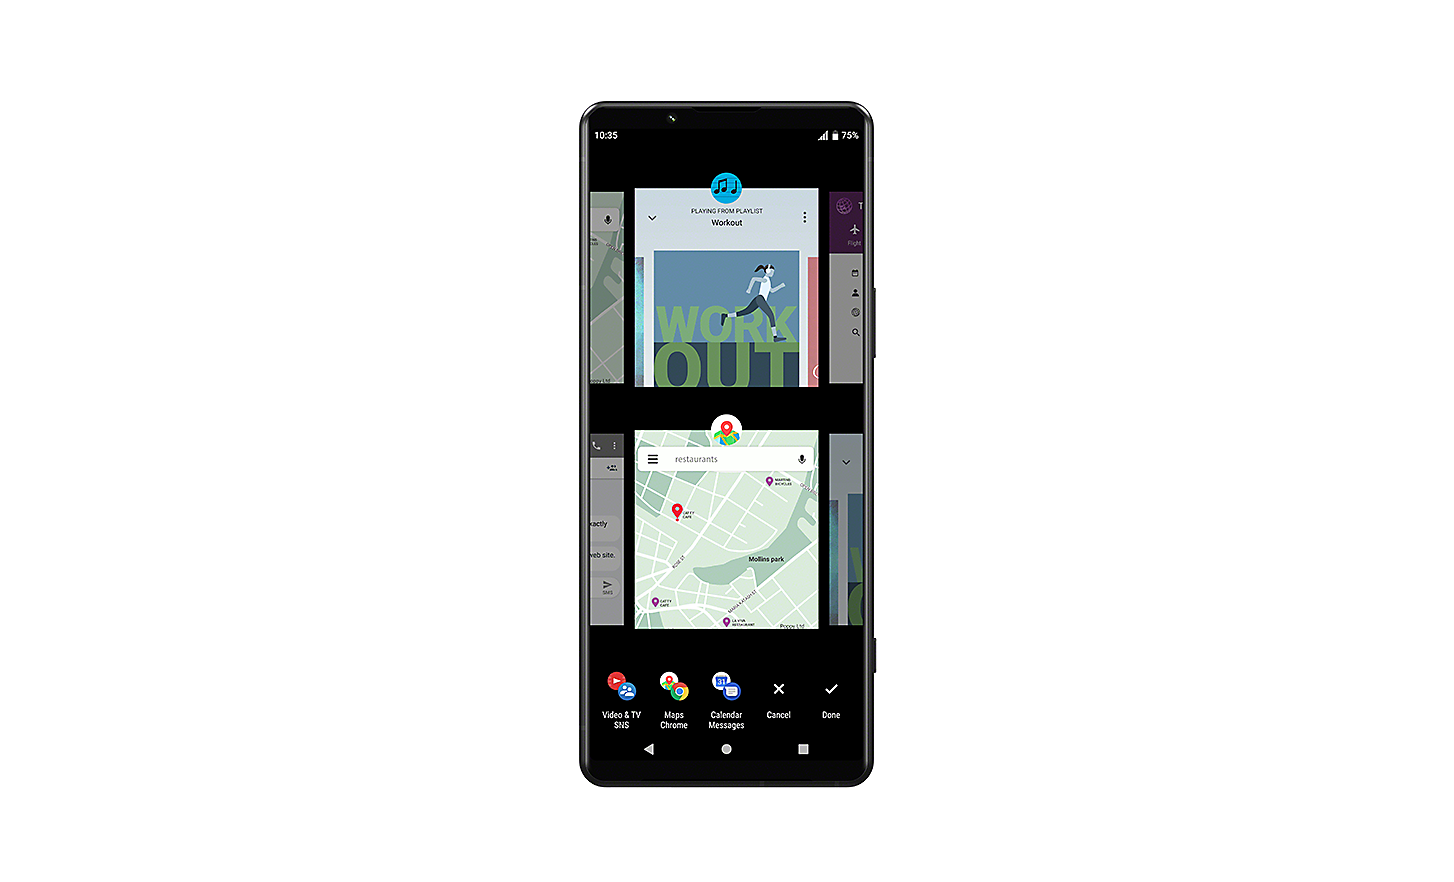 Smartphone Xperia che mostra l'interfaccia utente con il passaggio a più finestre